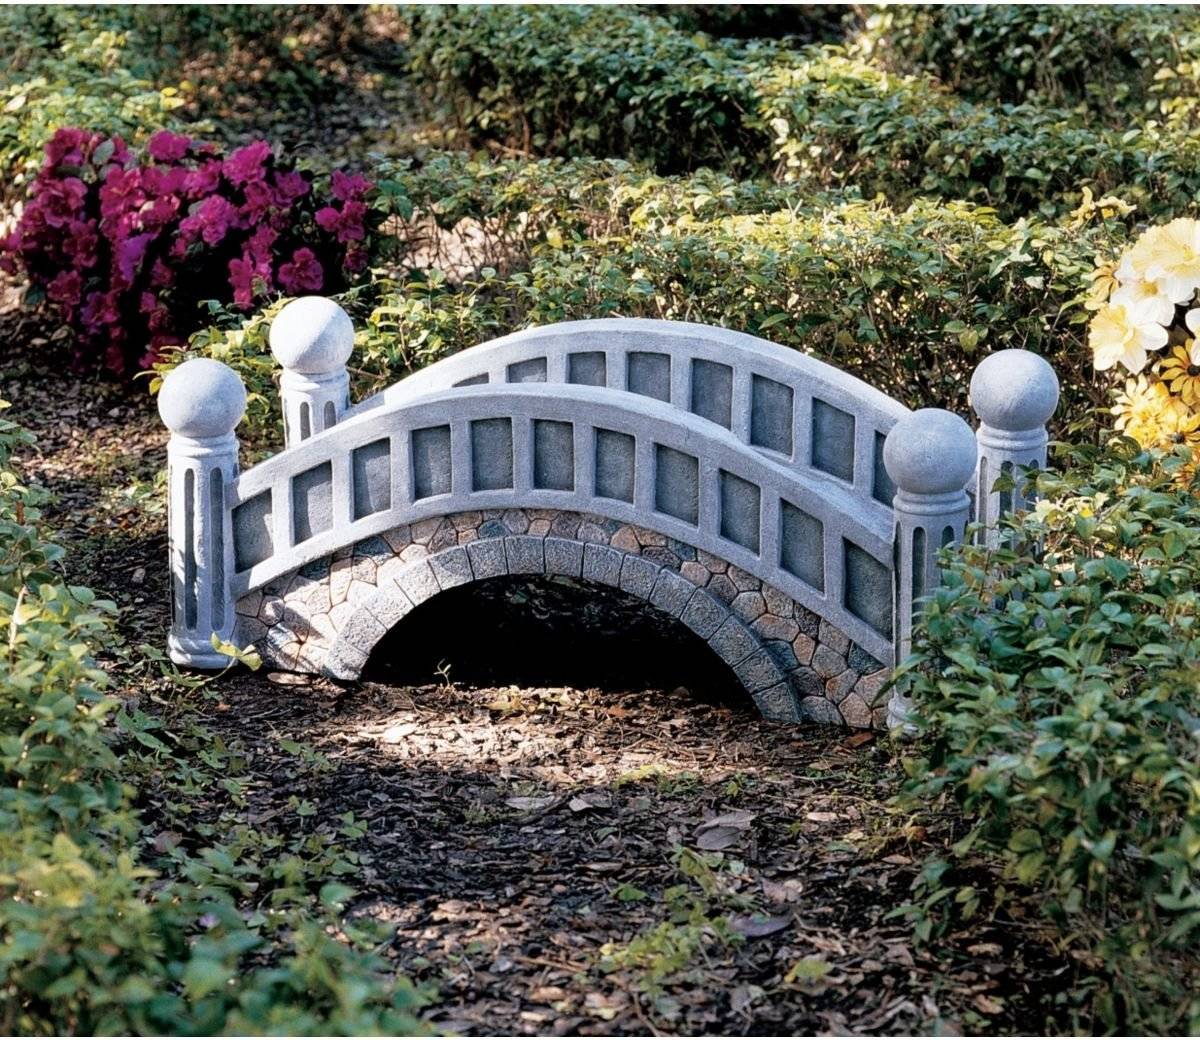 Каменистый сад в ландшафтном дизайне — советы по обустройству - 23 фото